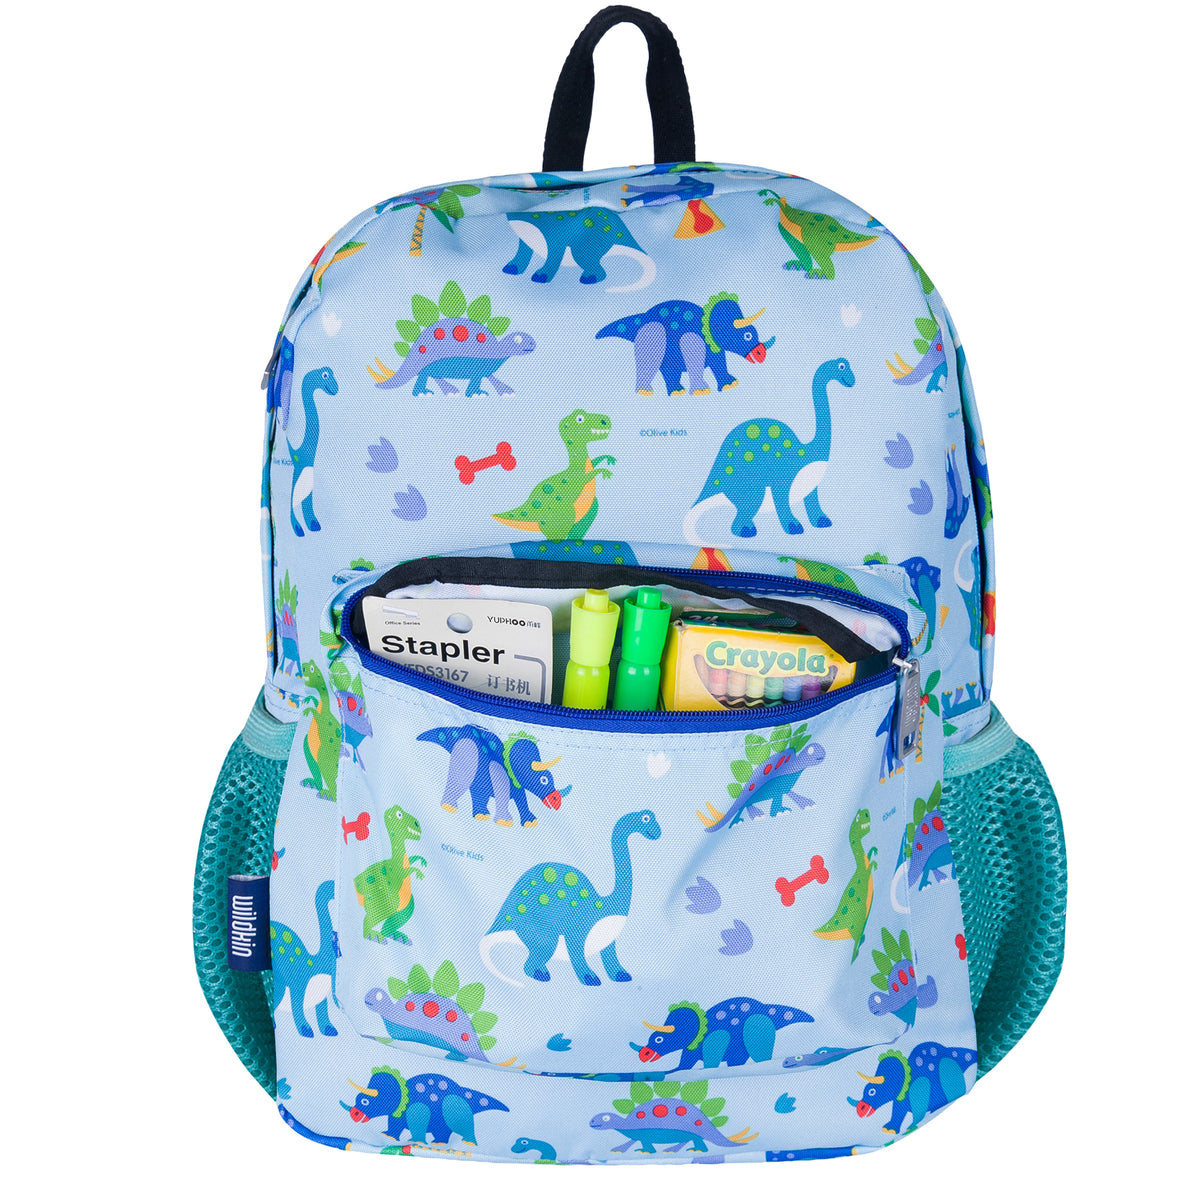 Wildkin Dinosaur Land 16 inch Backpack